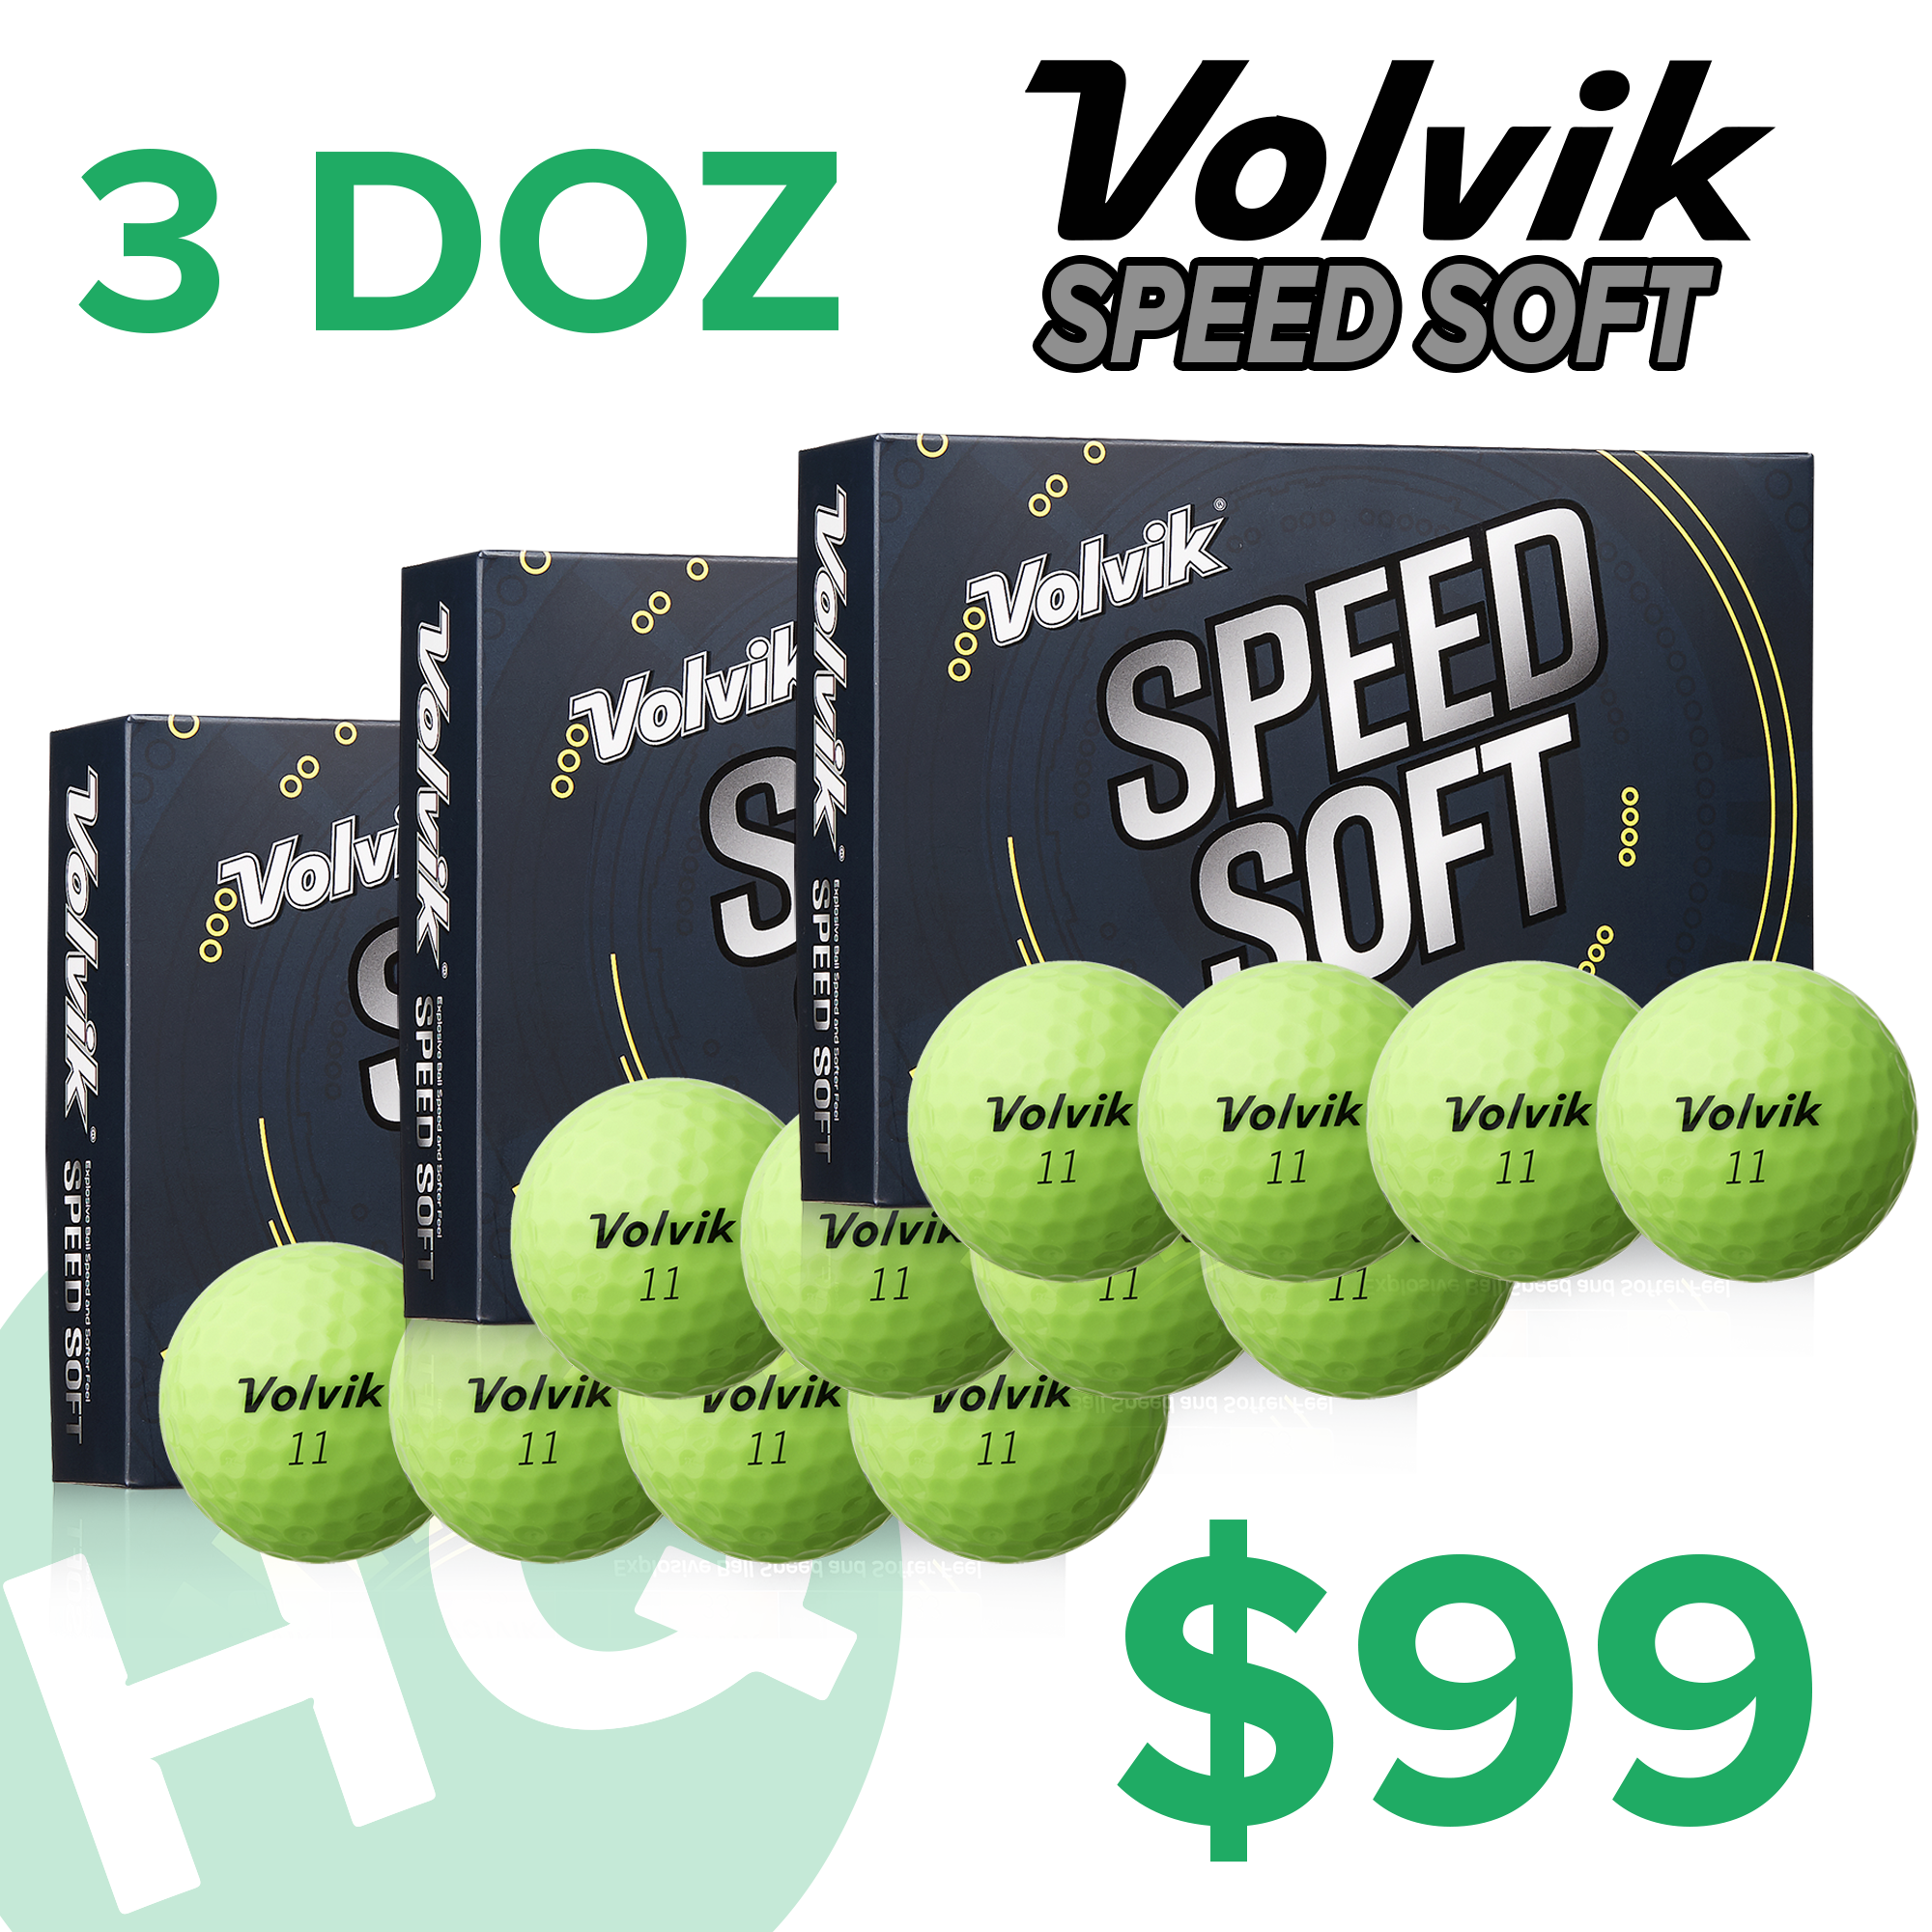 Volvik Speed Soft Green Dozen - 3 for $99